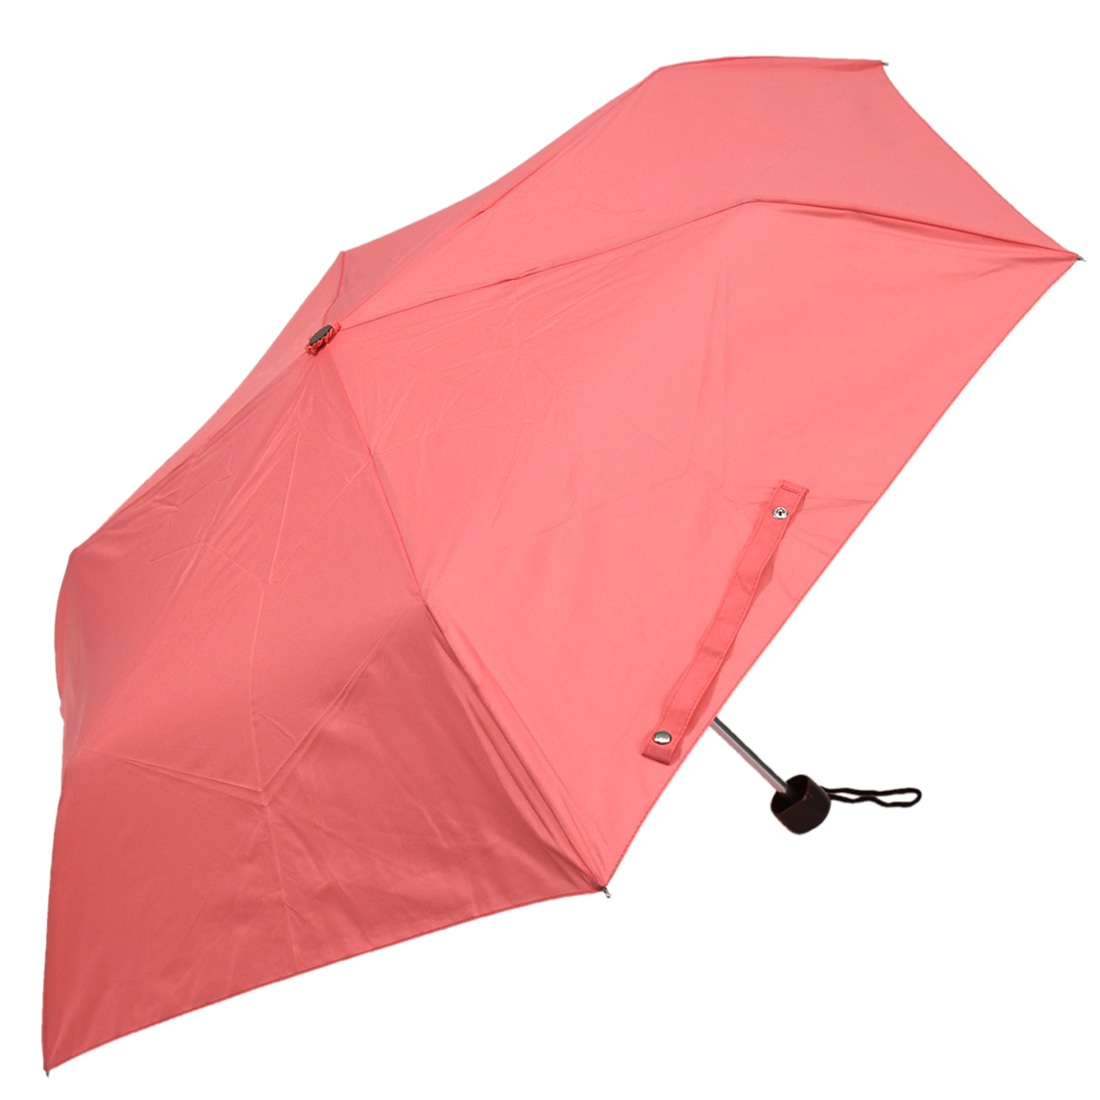 晴雨兼用 日傘 雨傘 折りたたみ傘 大桜 柄が浮き出る 55cm 全6色 暑さ 熱中症 紫外線 UV 対策 撥水 防水 軽量 おしゃれ 通年用 大人 レディース 女性 55cm 桃